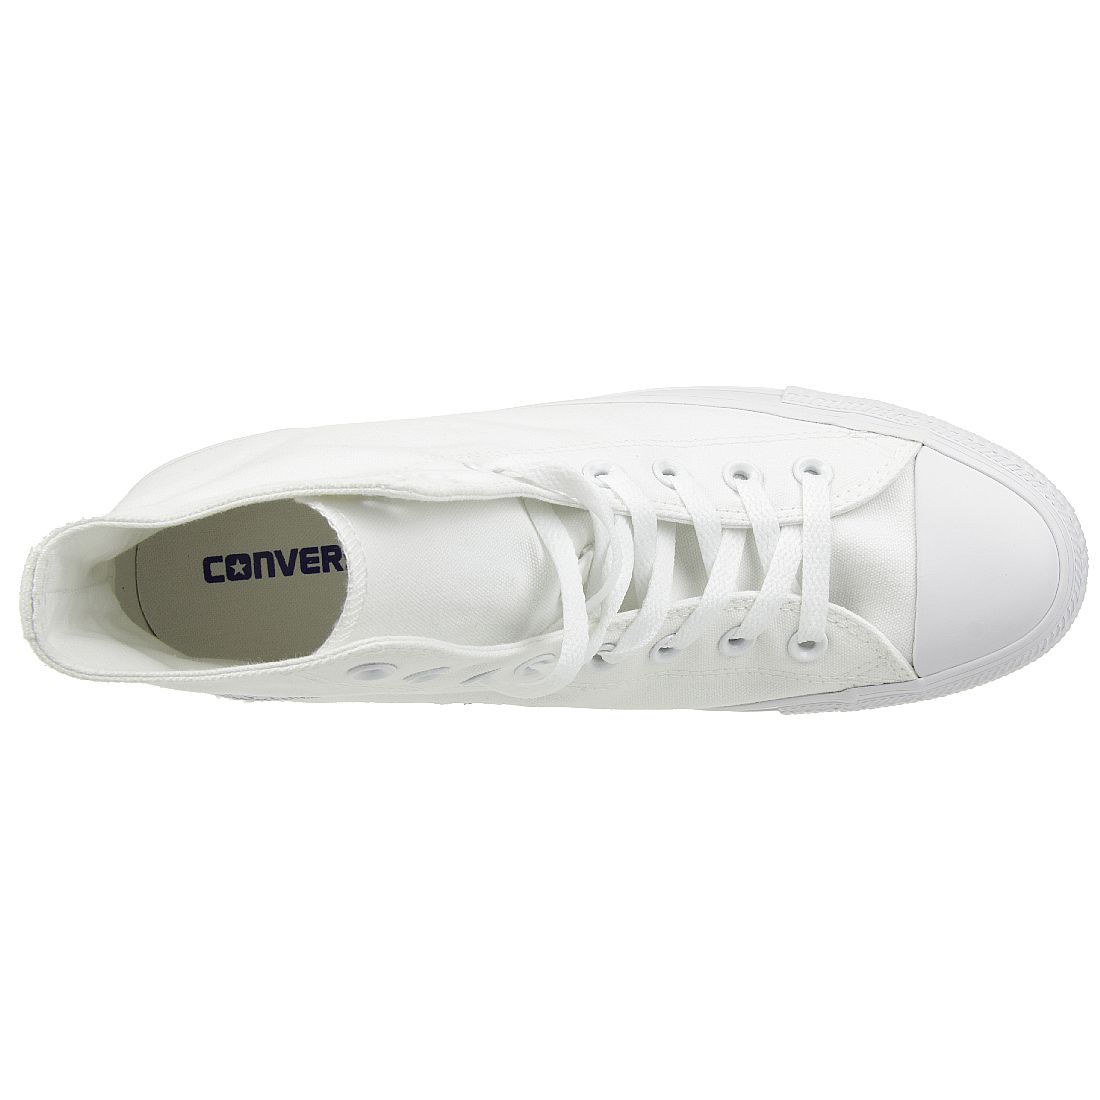 Converse C Taylor A/S HI Chuck Schuhe Sneaker canvas weiss 1U646